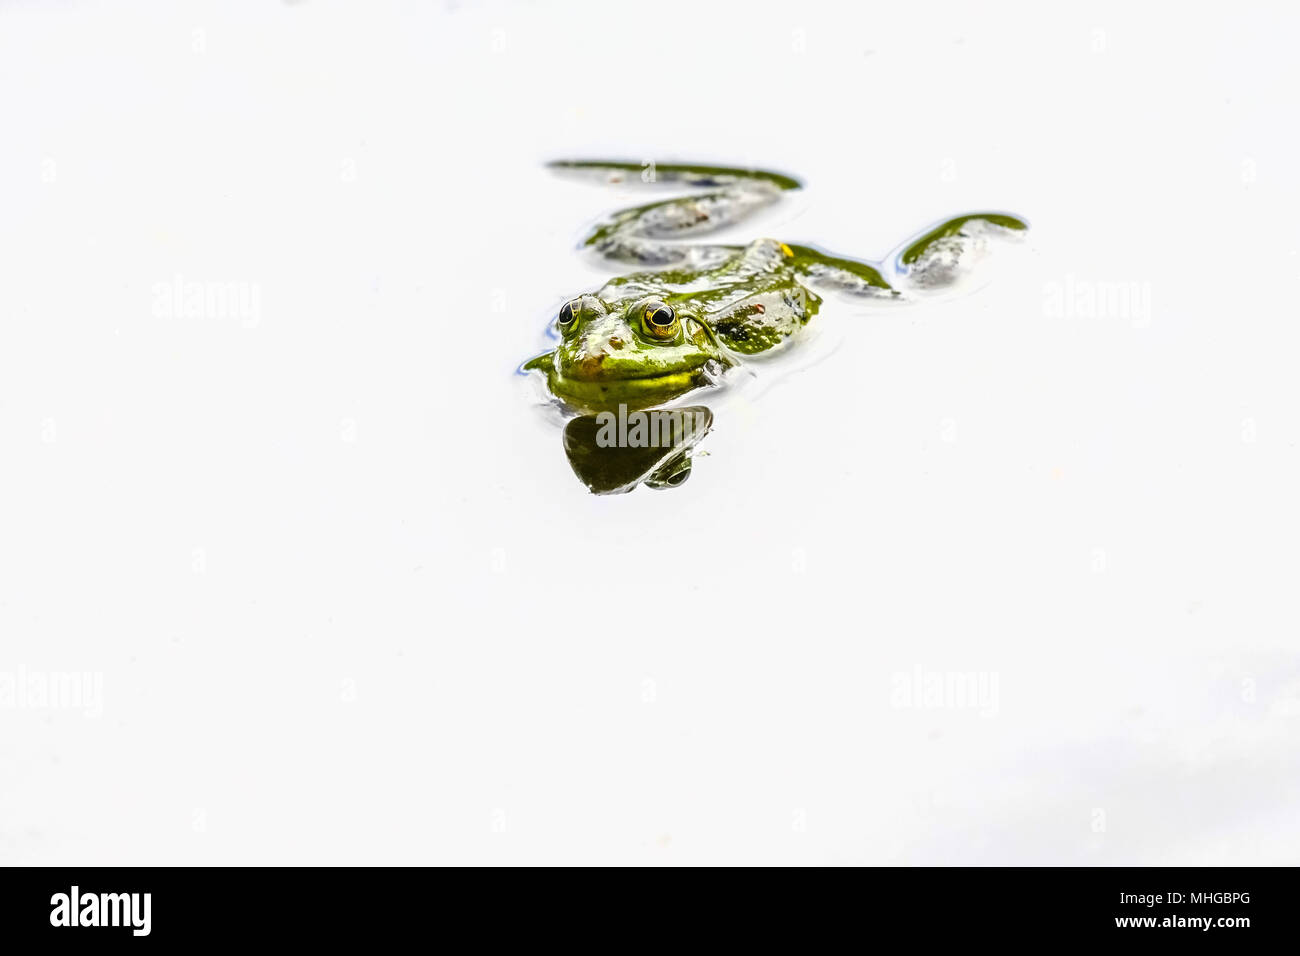 Edible frog (Pelophylax kl. esculentus), Lange Erlen, Riehen, Basel-Stadt Canton, Switzerland. Stock Photo